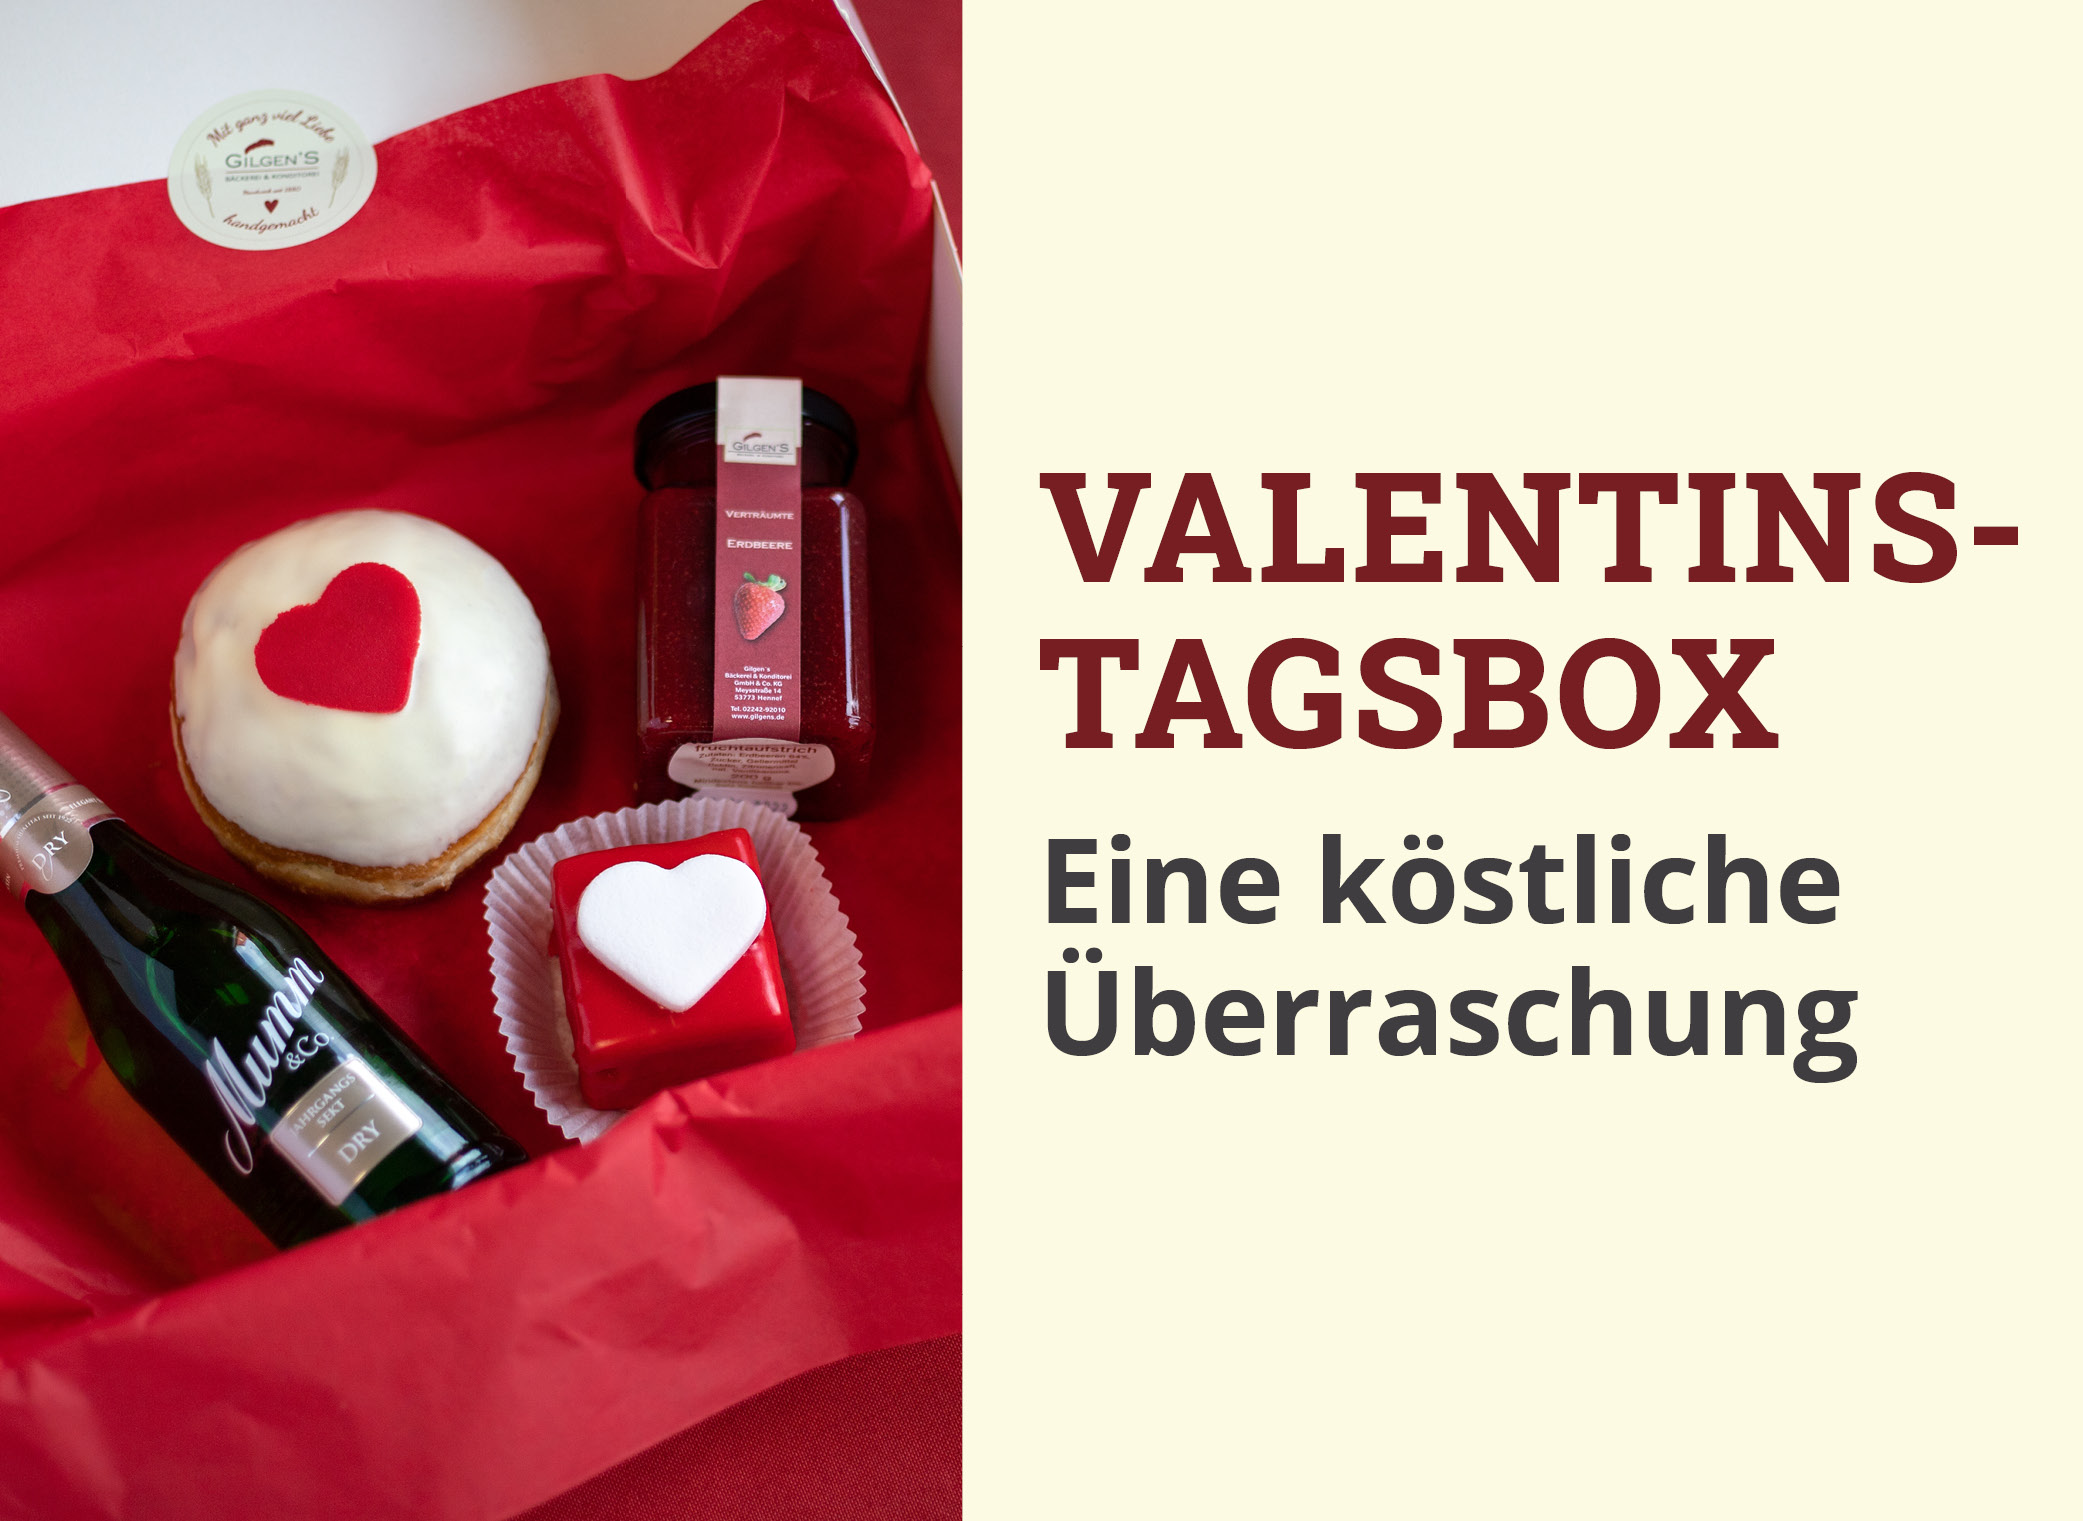 Valentinstagsbox für die Liebsten